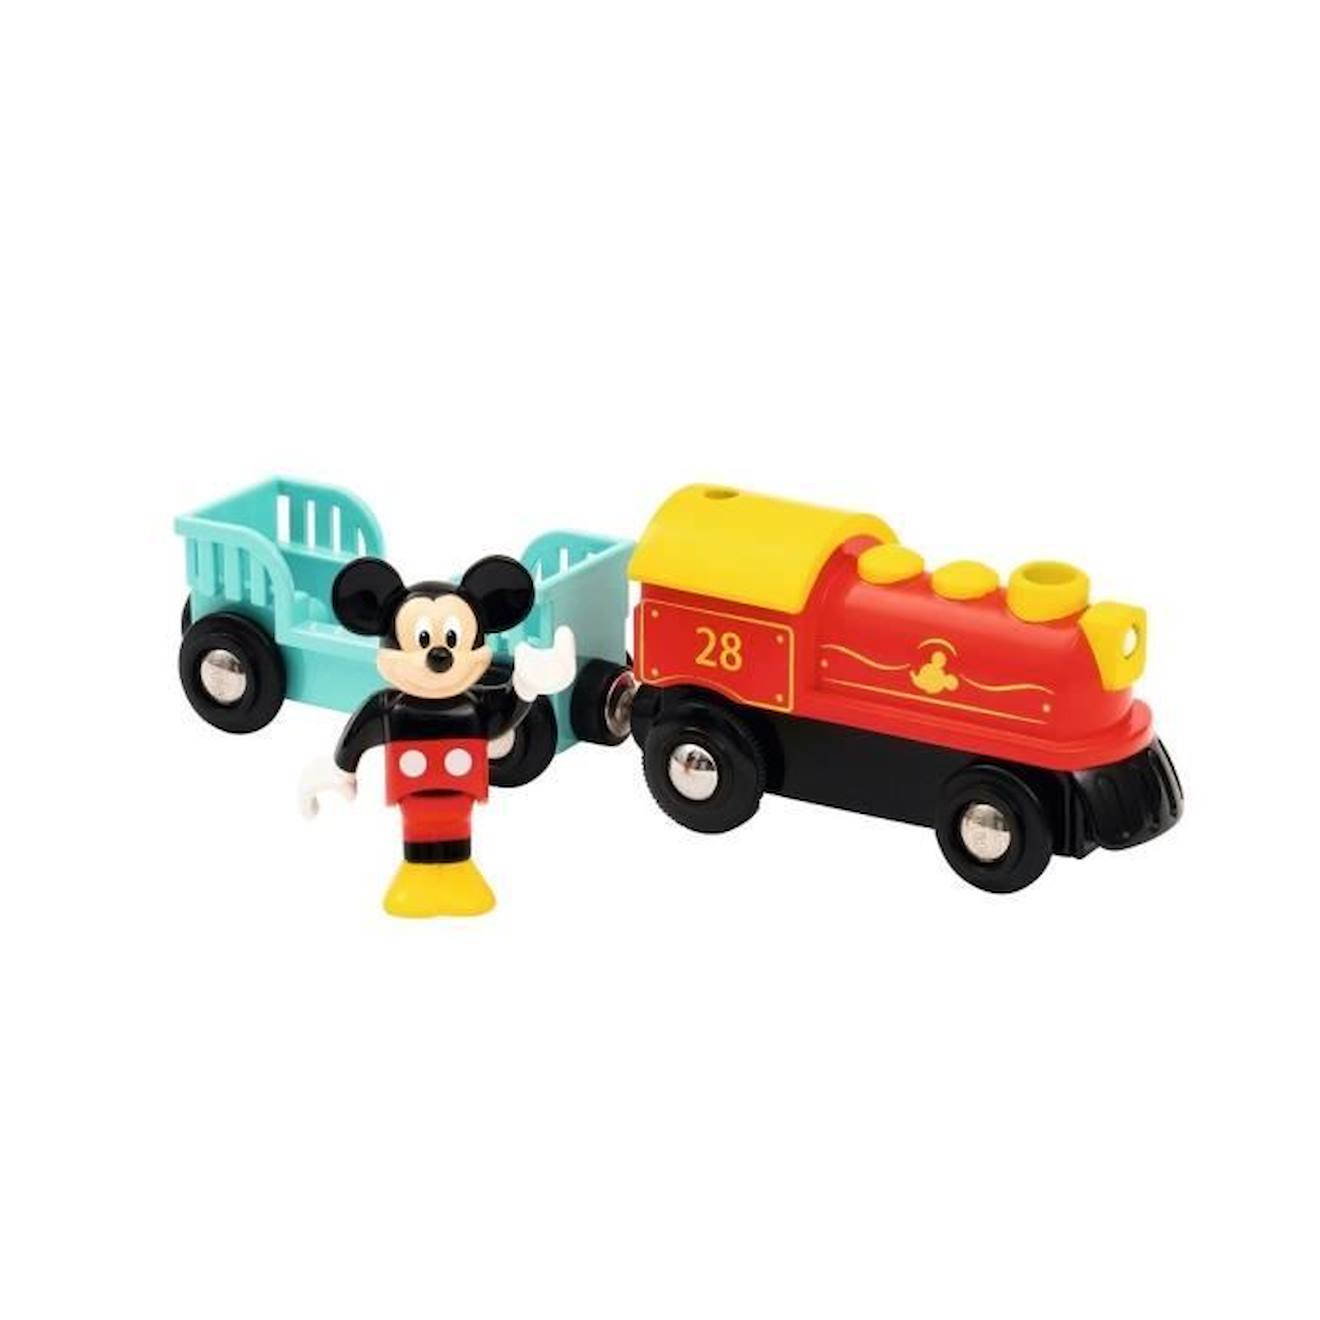 Train à pile Mickey Mouse - BRIO - Ravensburger - Dès 3 ans